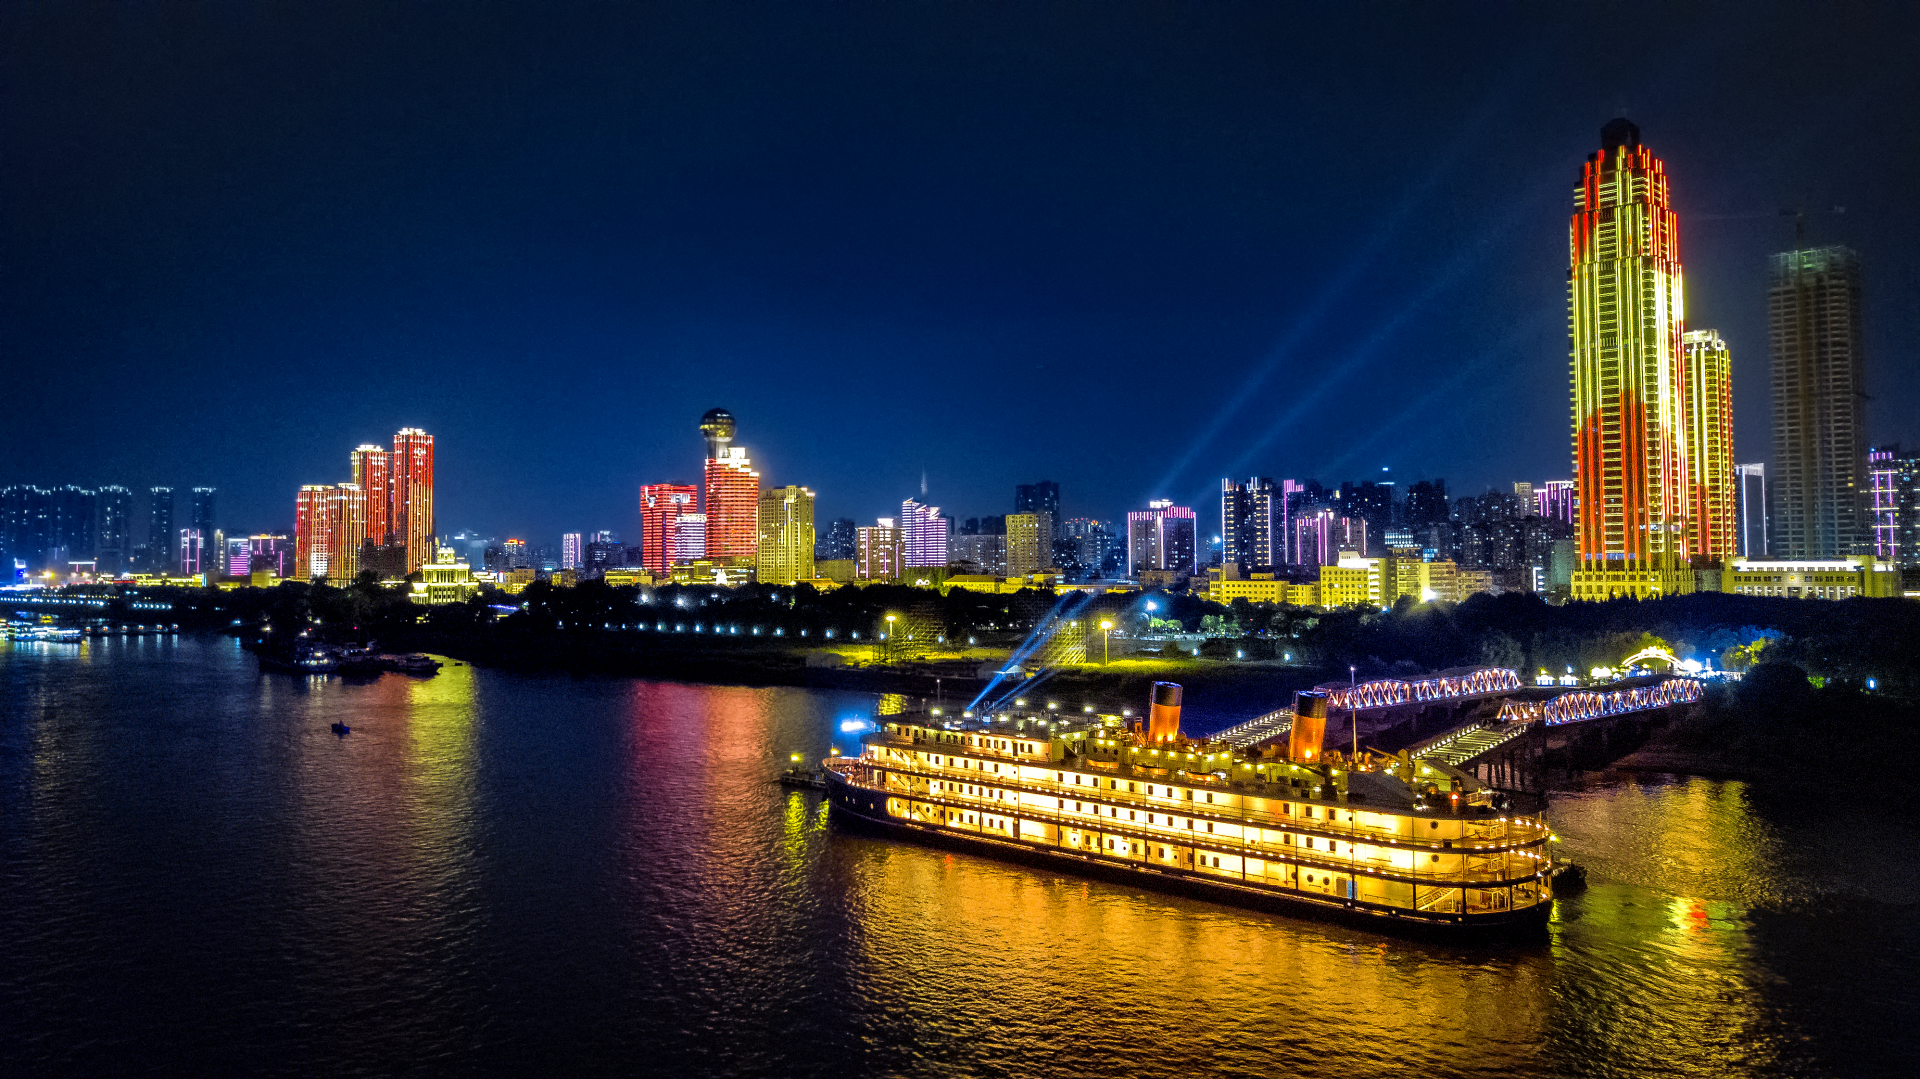 梦幻江城灯光秀以展现武汉城市文化为特色,自2017年起首演,共有